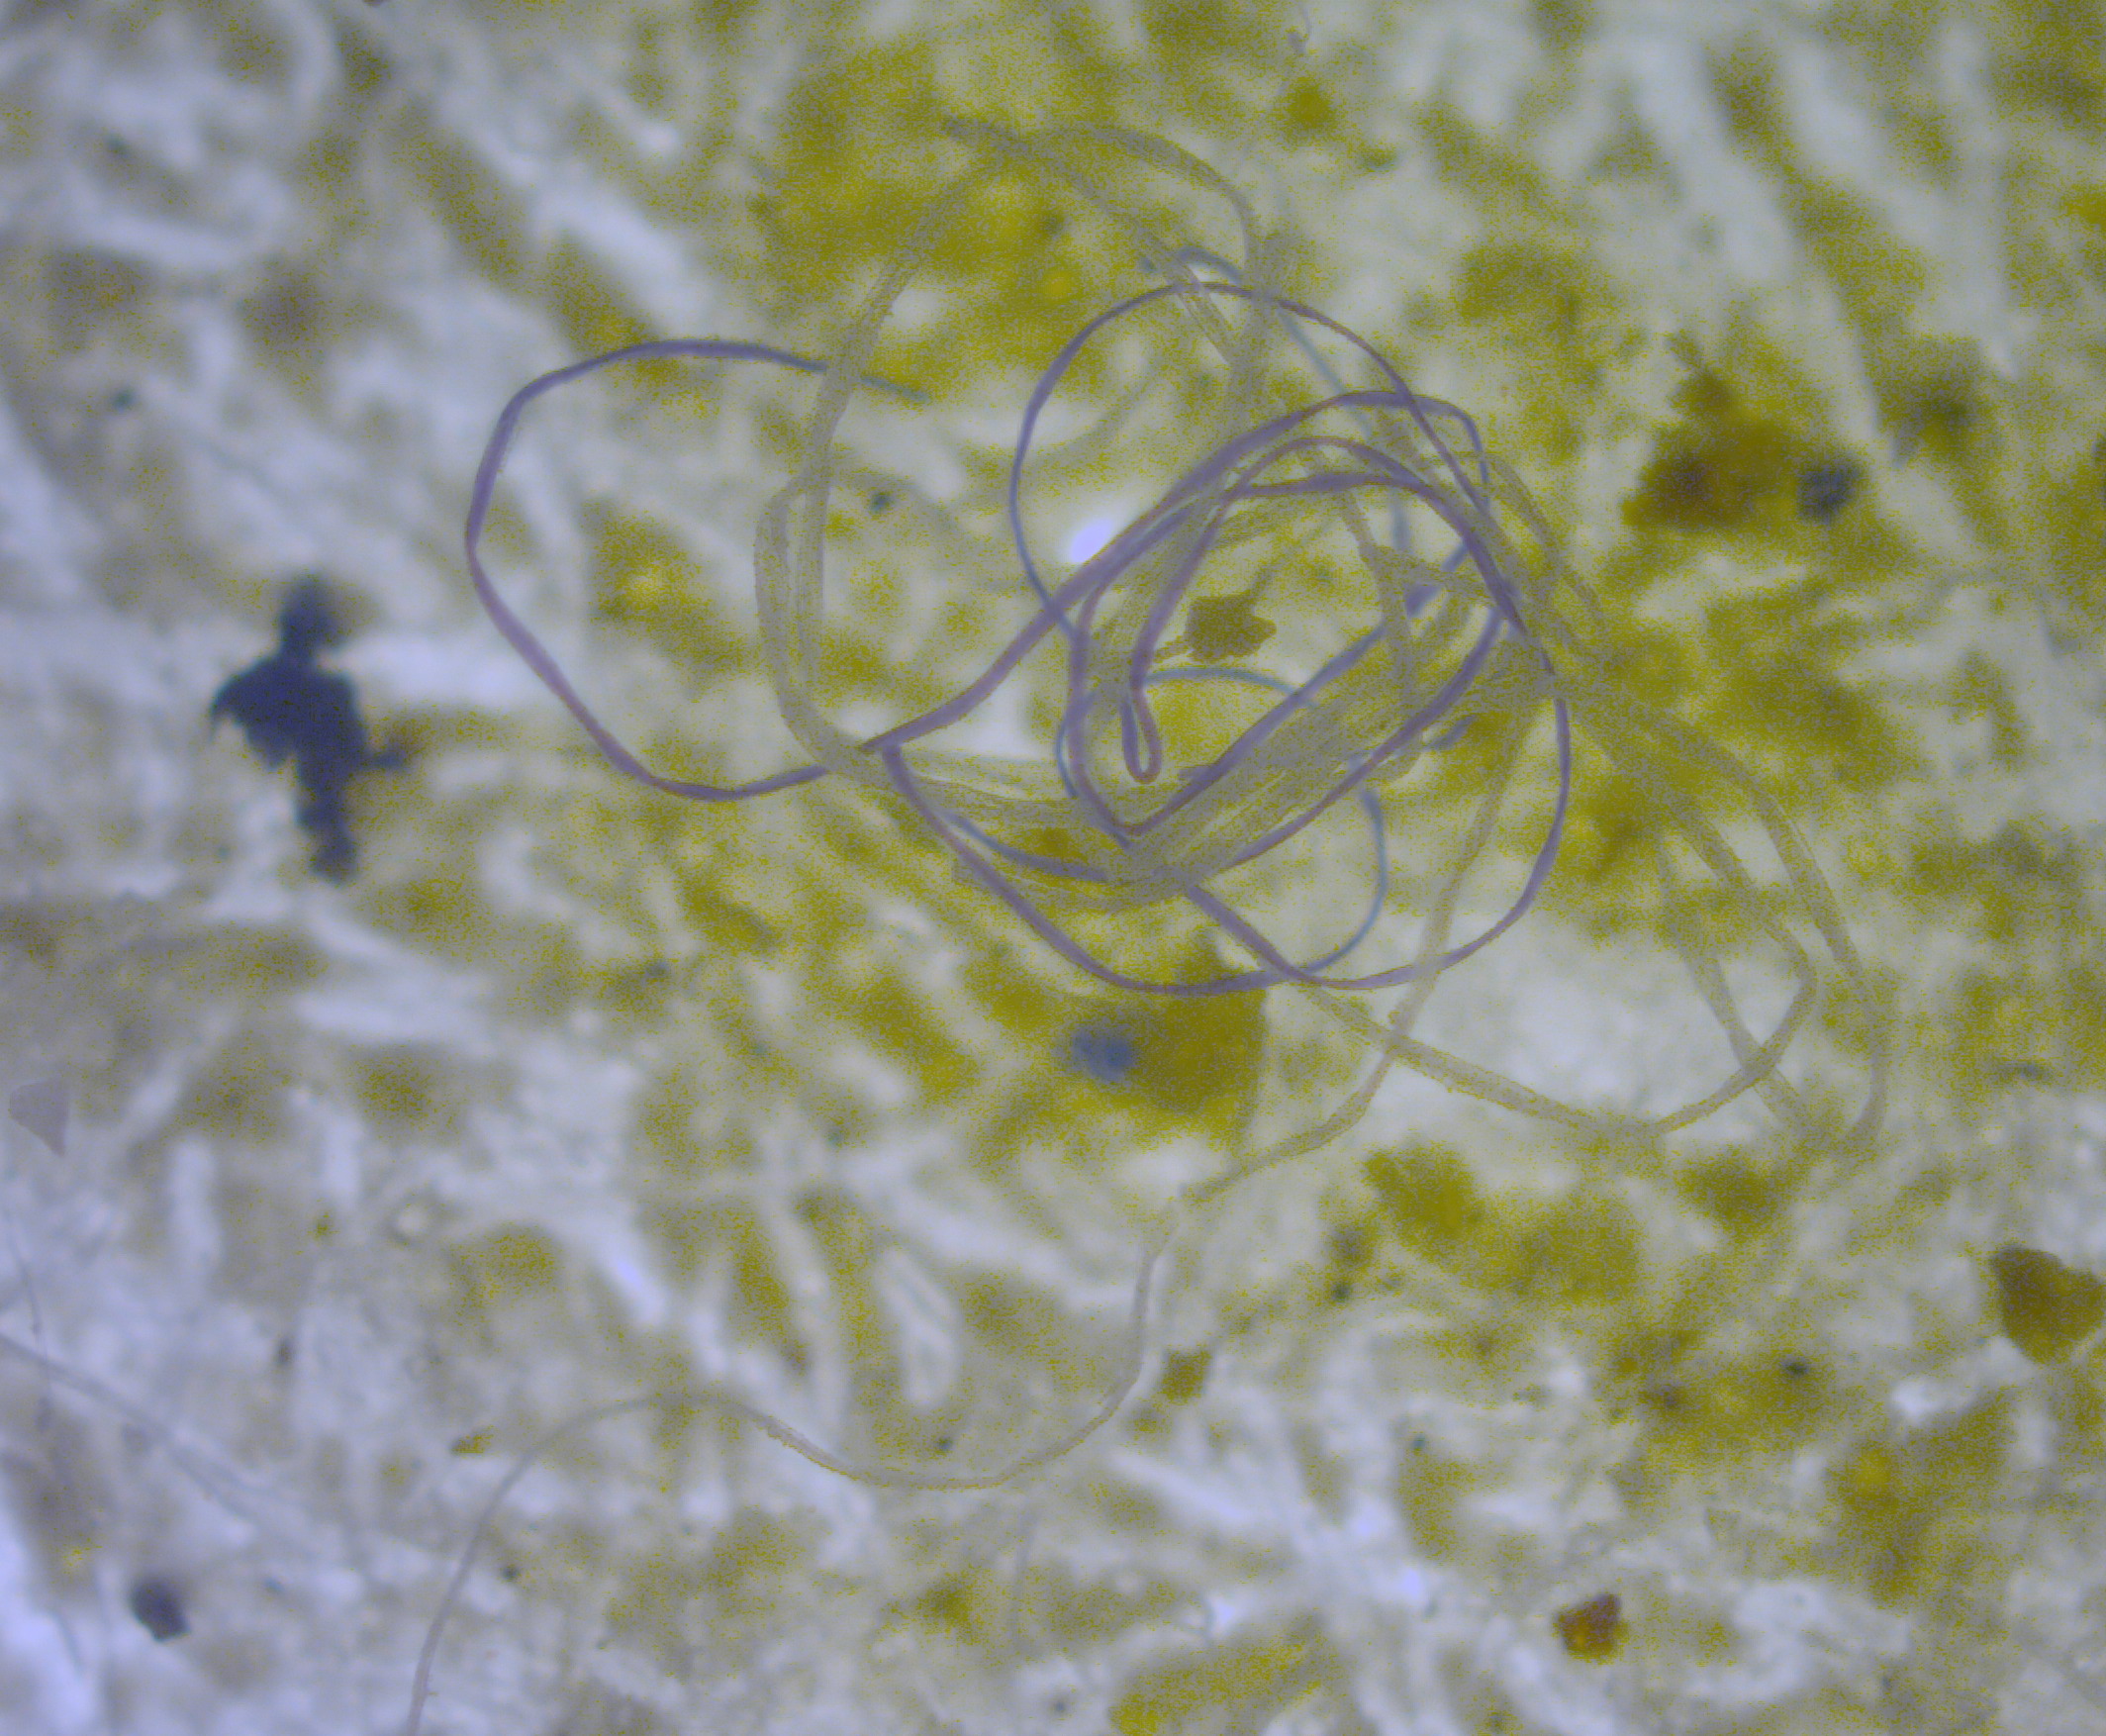 En la imagen podemos ver una fibra de microplástico al microscopio (Trabajo propio de M.Danny25, Wikipedia).